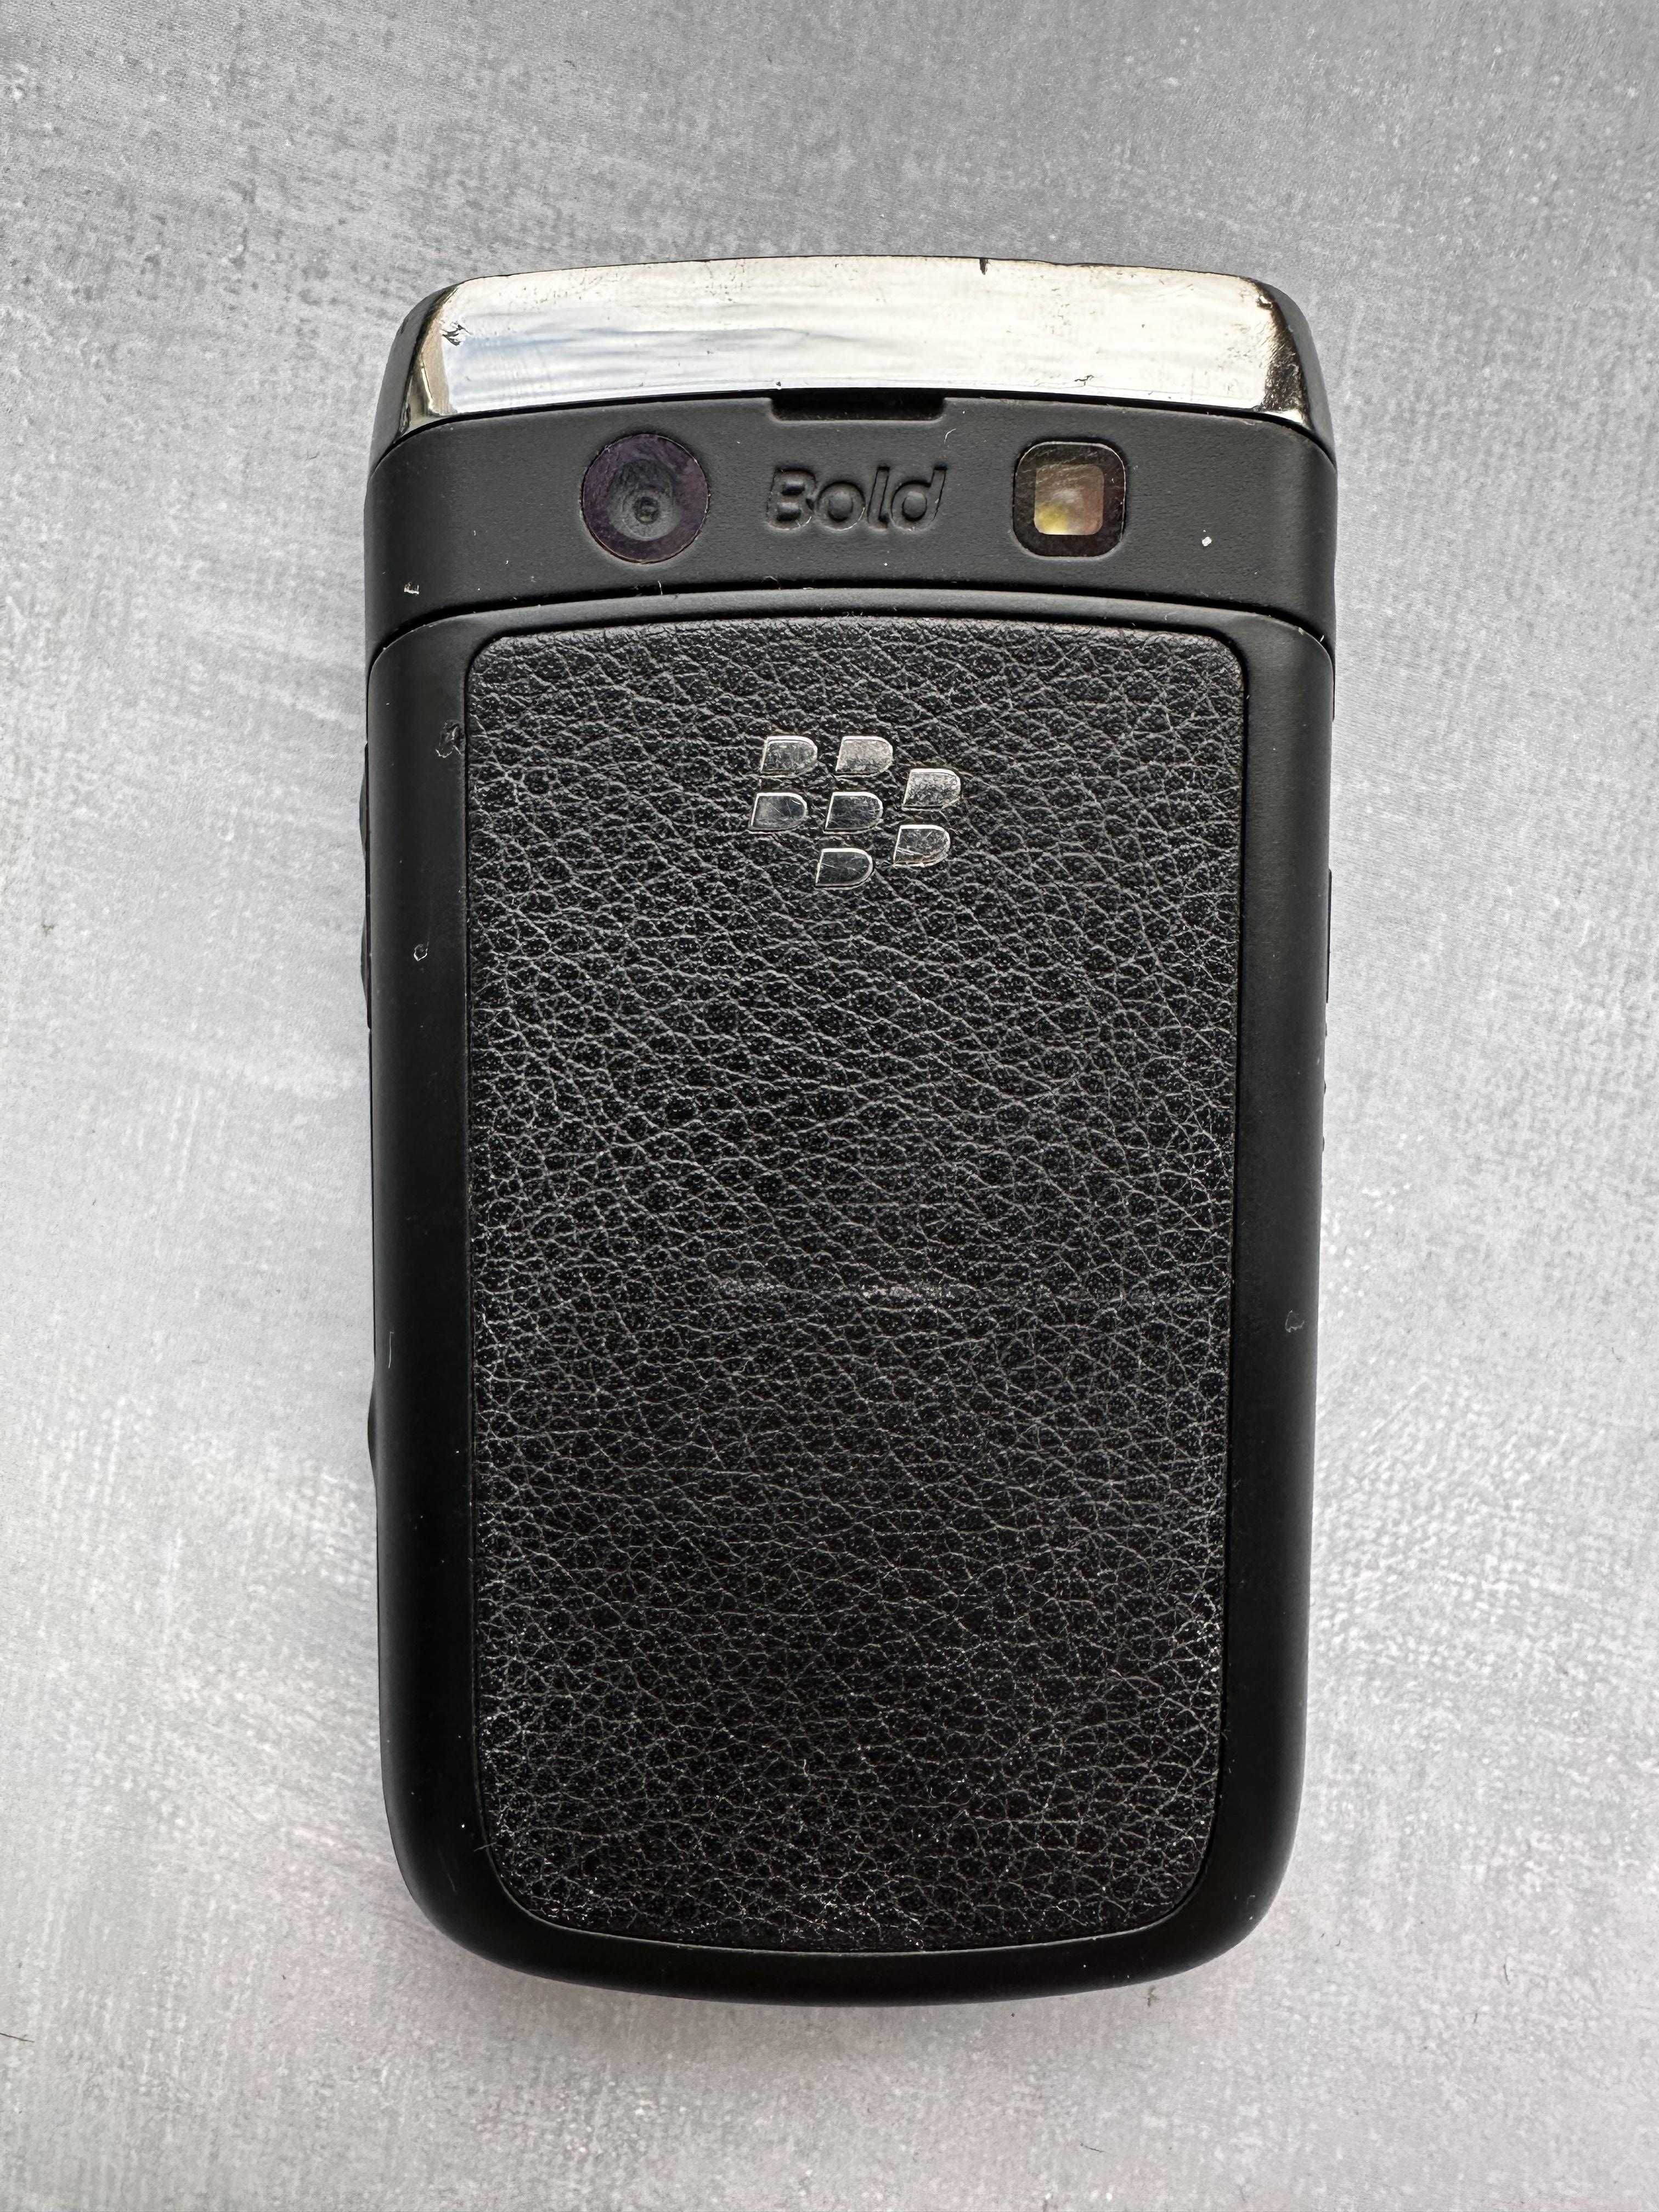 Blackberry 9700 є російська мова